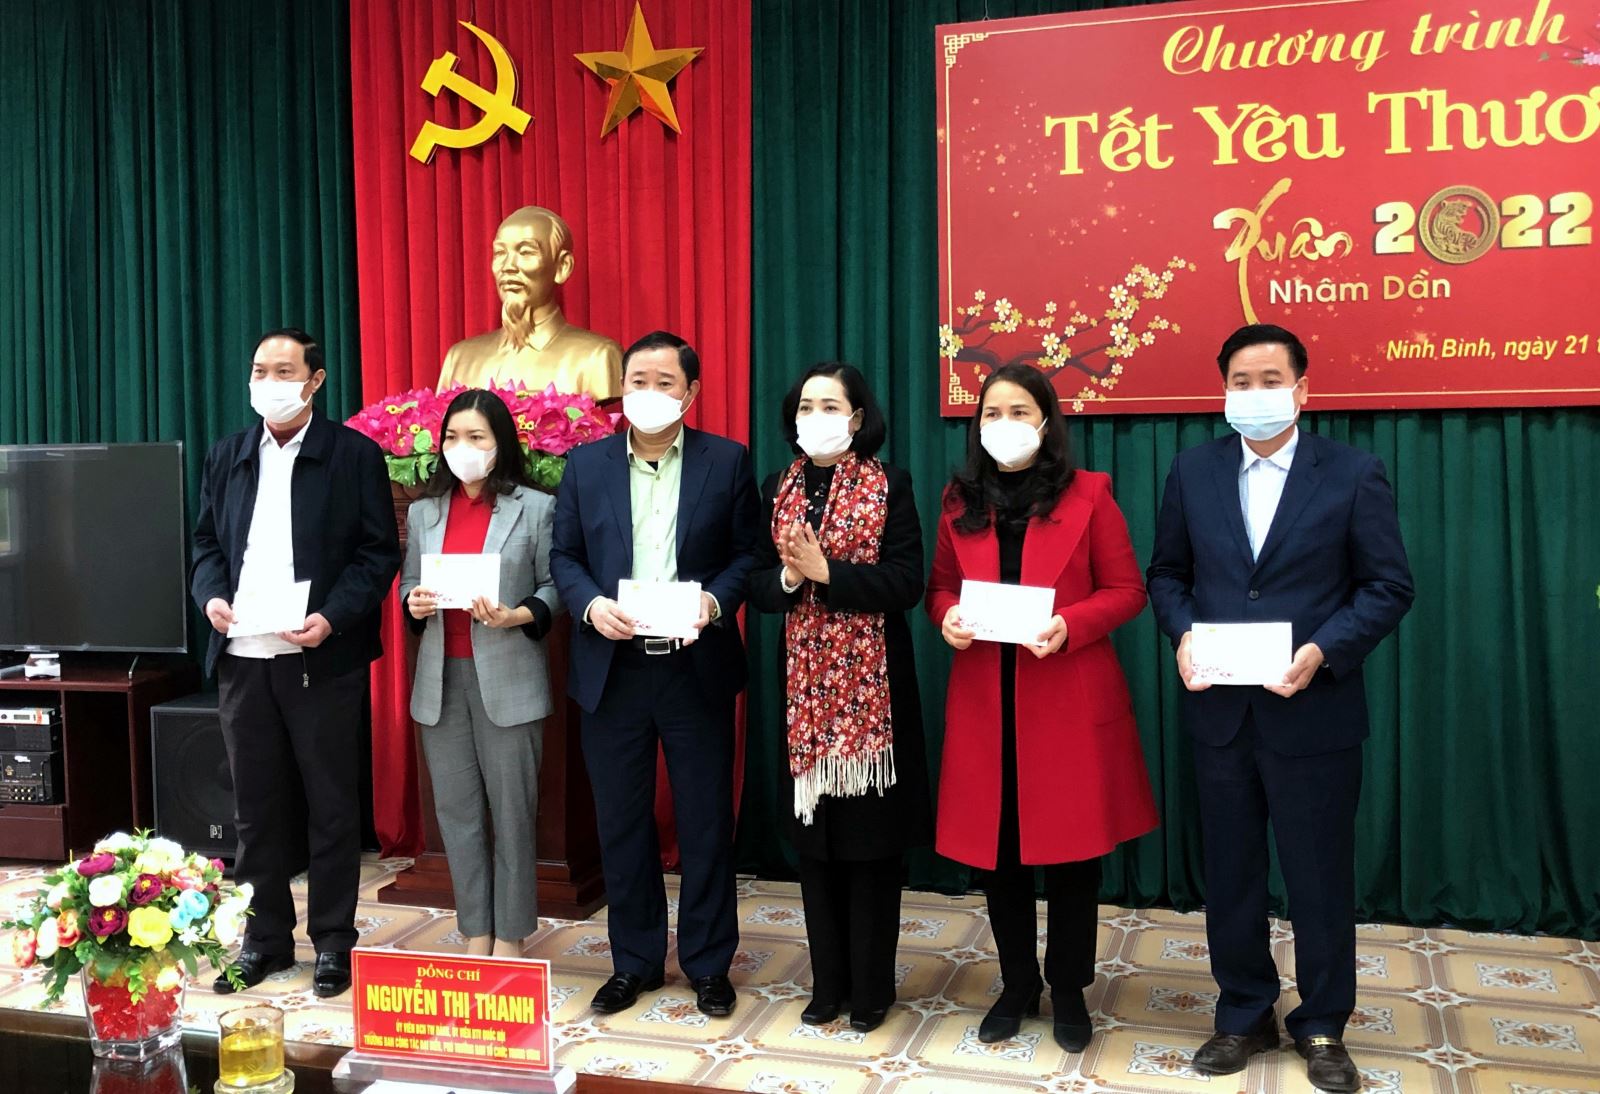 thay mặt đoàn công tác của Trung ương, Phó Trưởng Ban Công tác đại biểu Nguyễn Thị Thanh đã trao tặng 2.534 xuất quà, với trị giá là 1.350 triệu đồng cho các hộ nghèo, có hoàn cảnh khó khăn